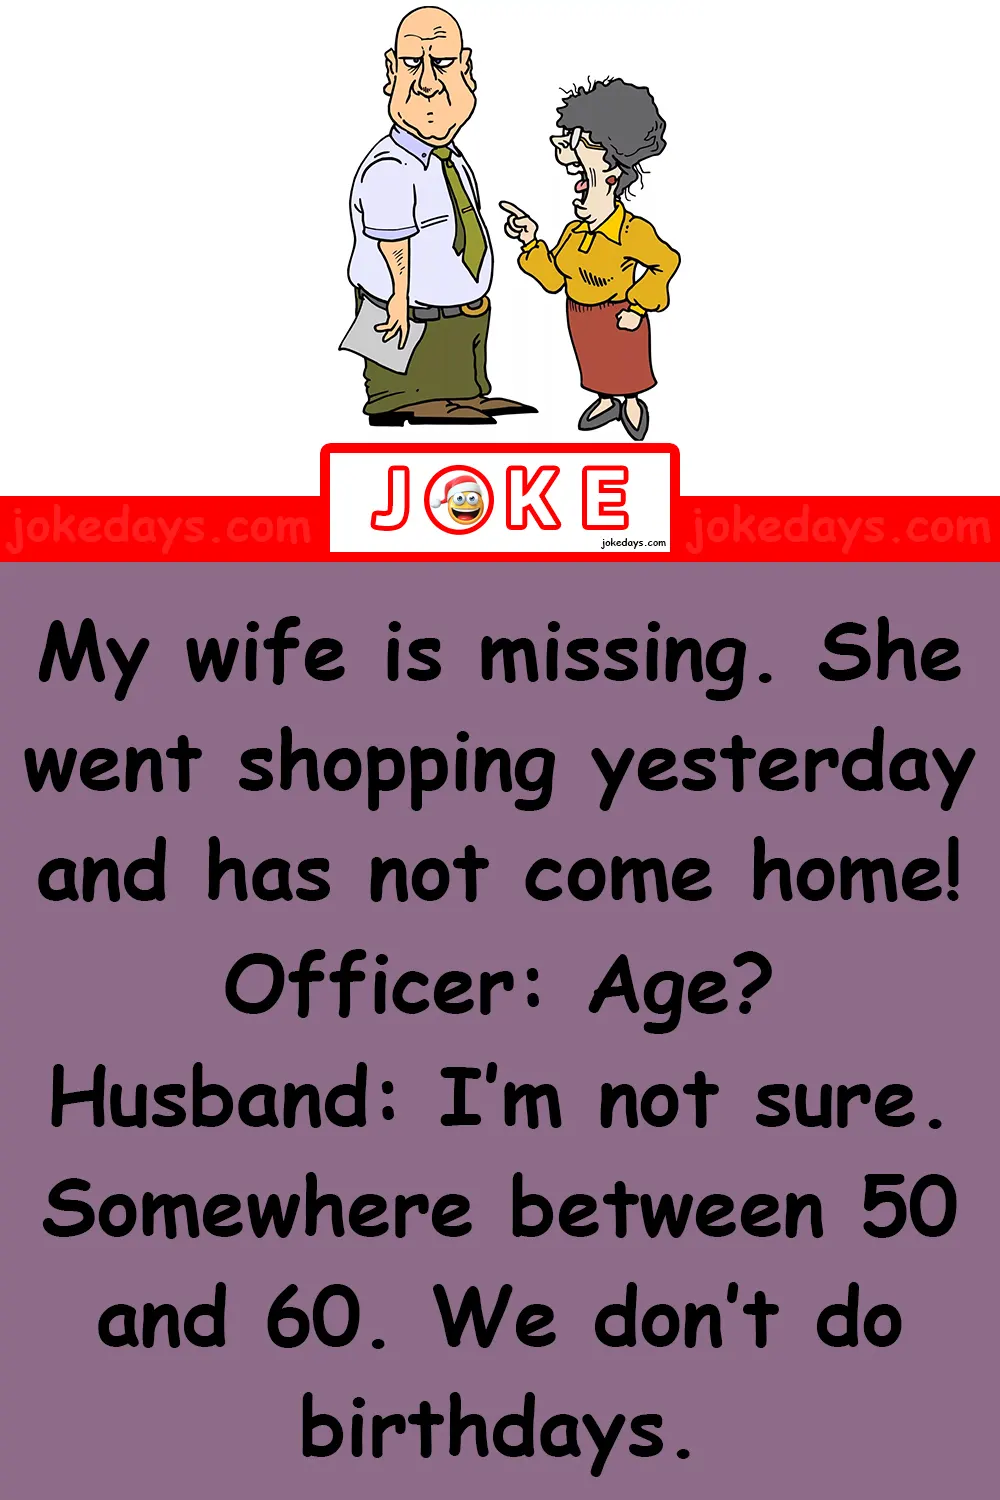 Missing (Officer – Husband)